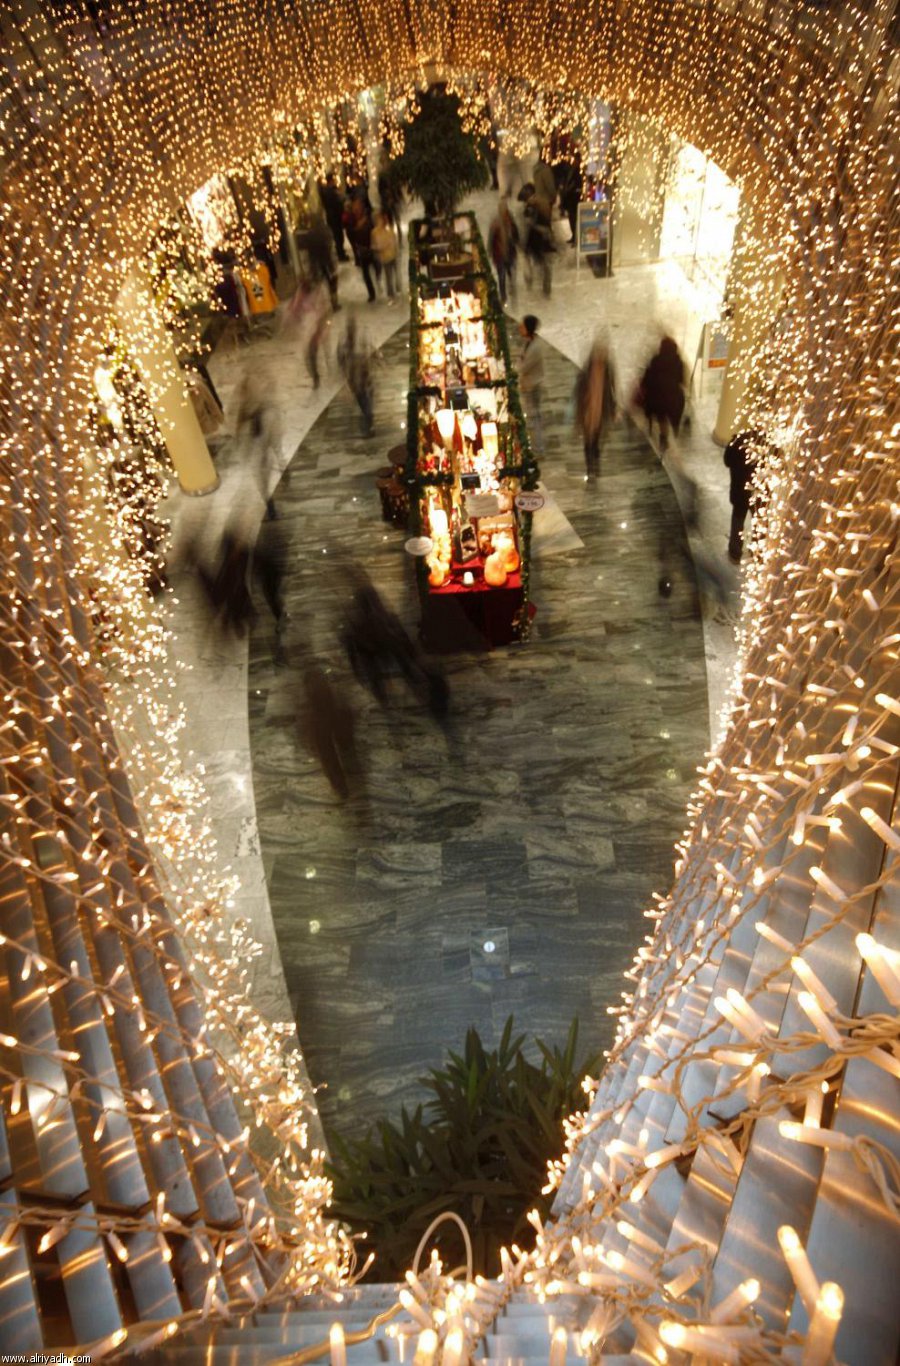 ازدانت العديد من عواصم ومدن دول العالم الغربي بالأضواء المبهجة احتفاء واستعدادا لاستقبال العام الميلادي الجديد 2012 .  Image